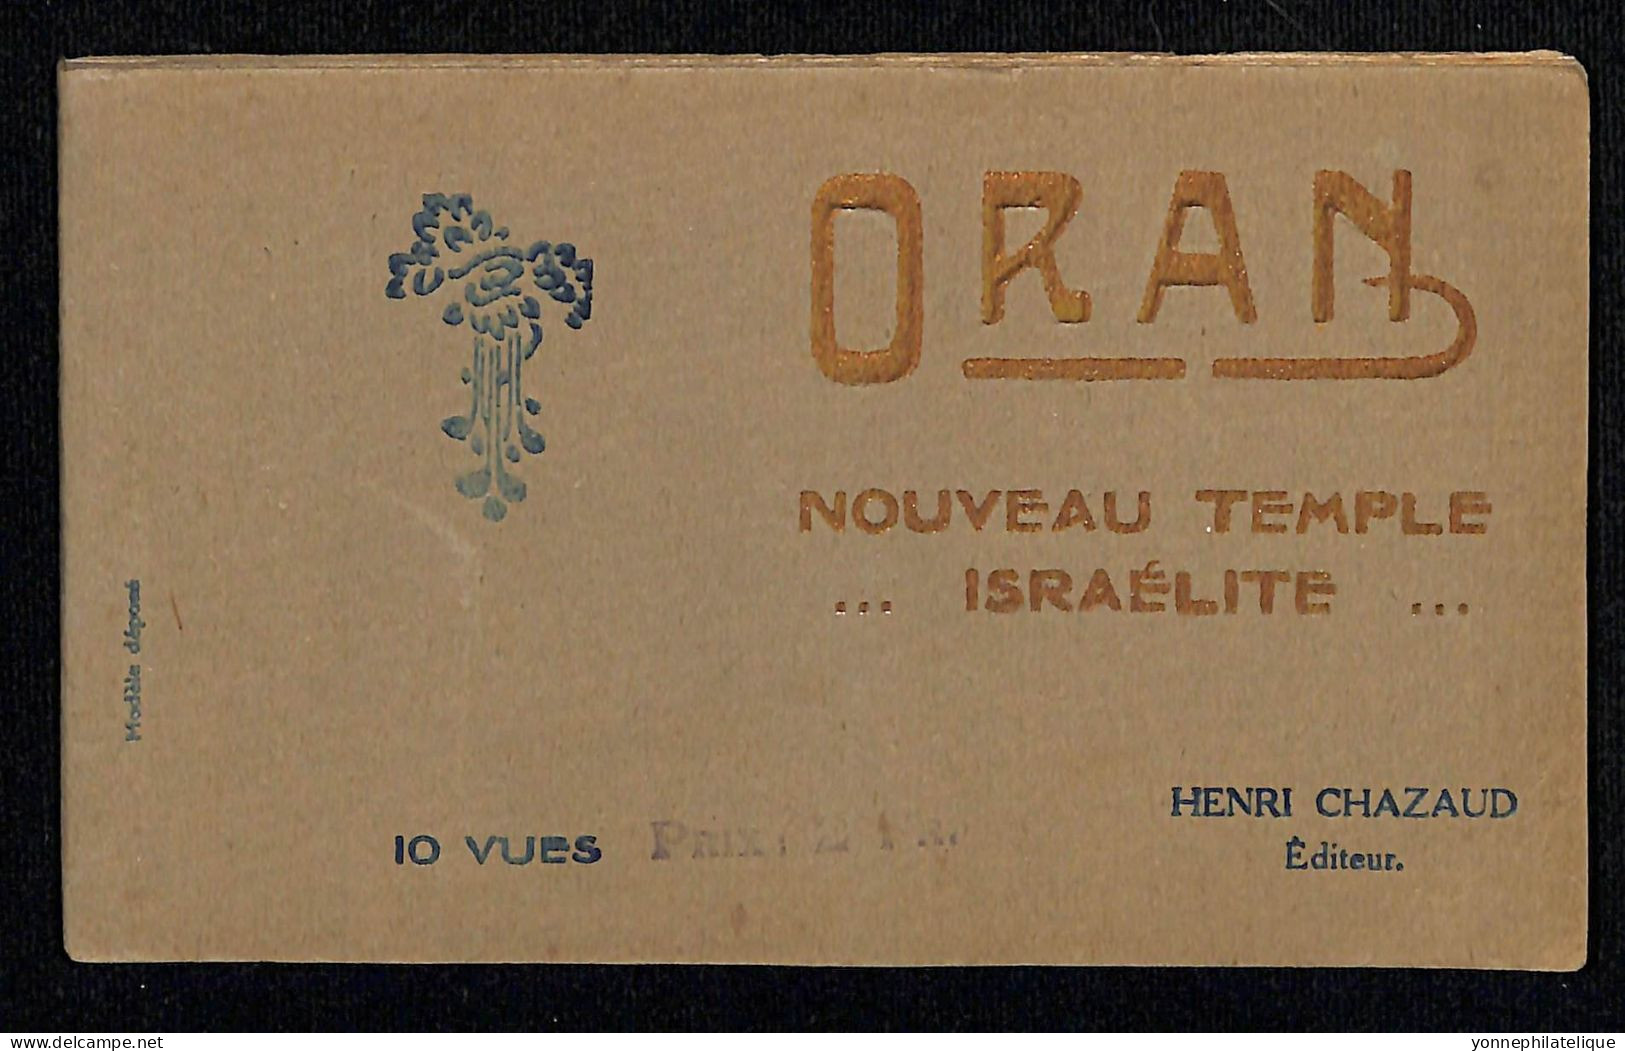 JUDAÏCA - JEWISH - ALGÉRIE - ORAN - Carnet De 10 Vues Nouveau Temple Israélite - édition Henri CHAZAUD - Jud-302 - Judaisme